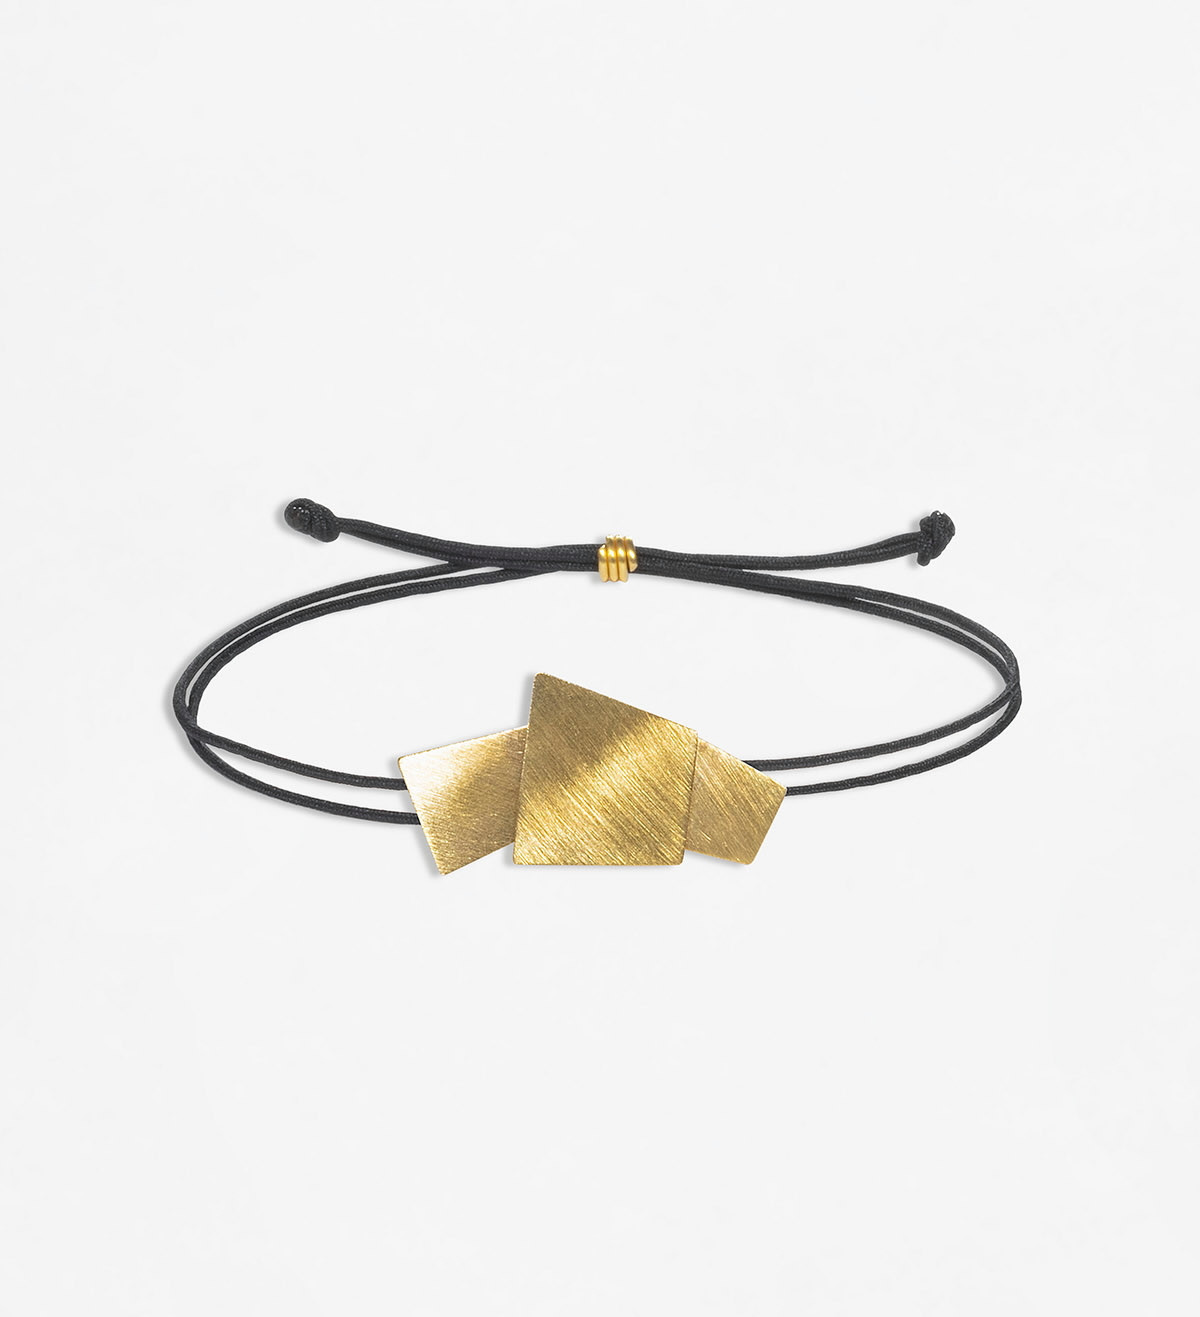 18k gold bracelet Aire 3 pcs